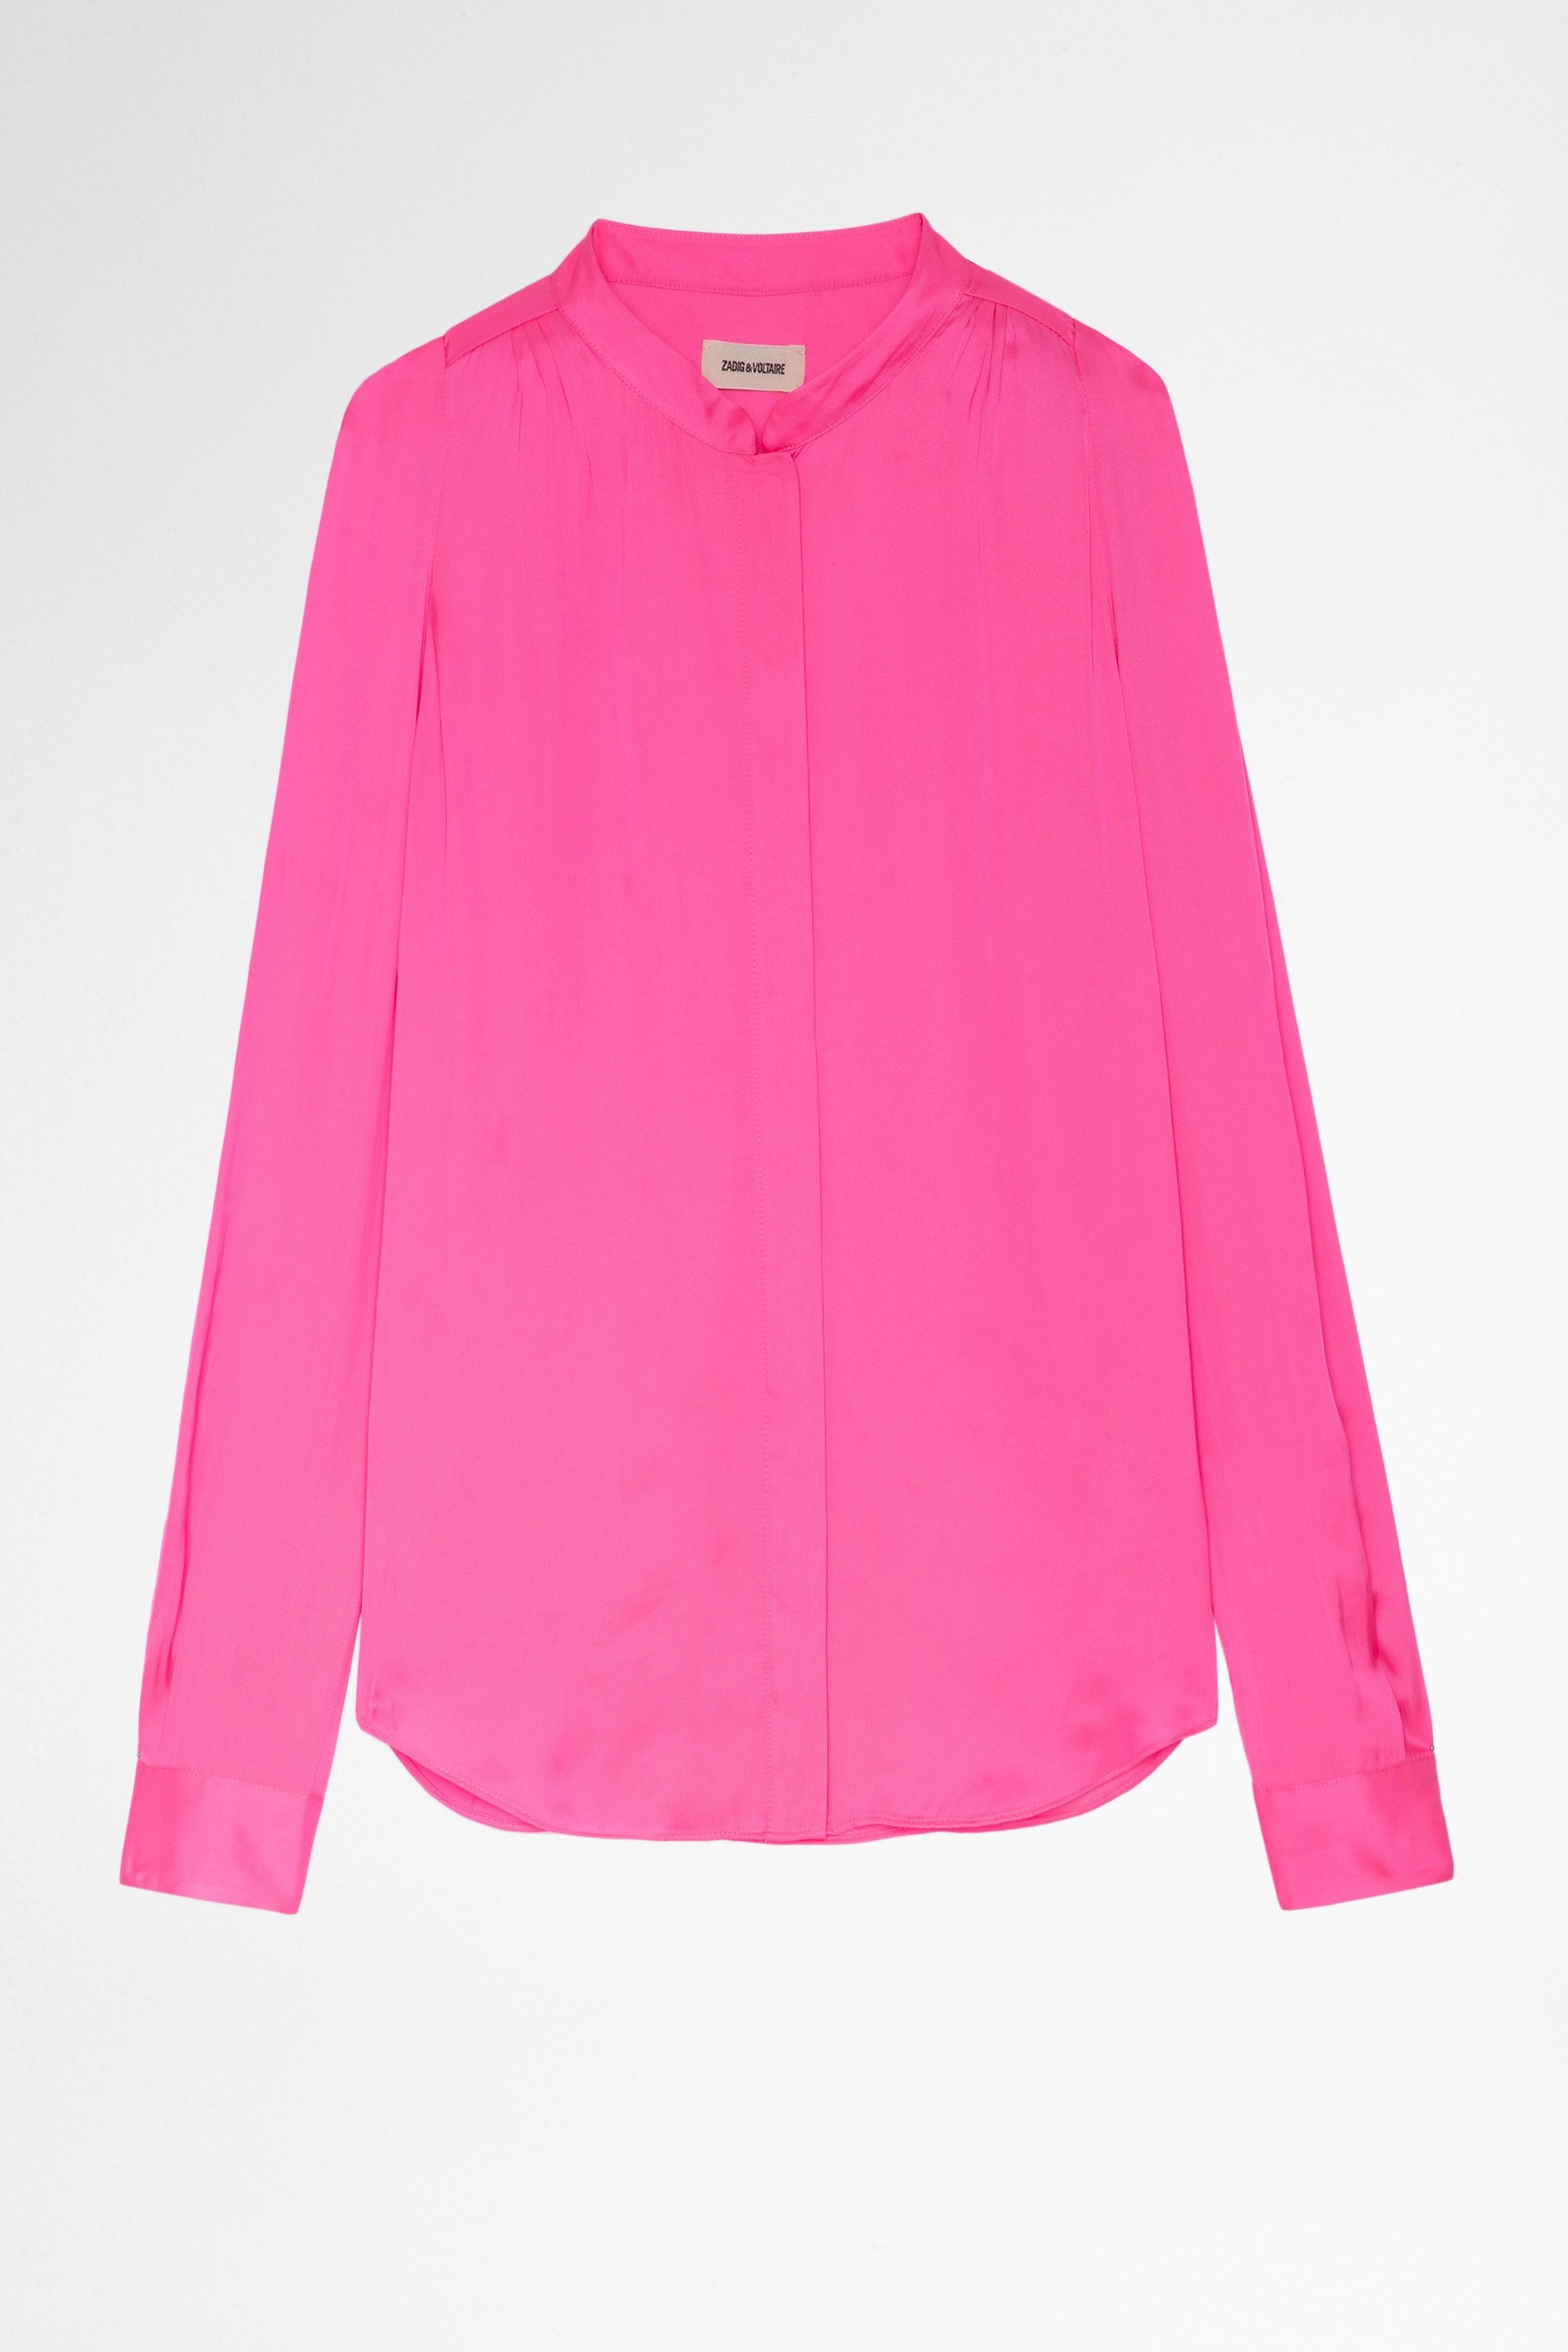 Camisa Touchy Camisa de satén rosa de manga larga de mujer